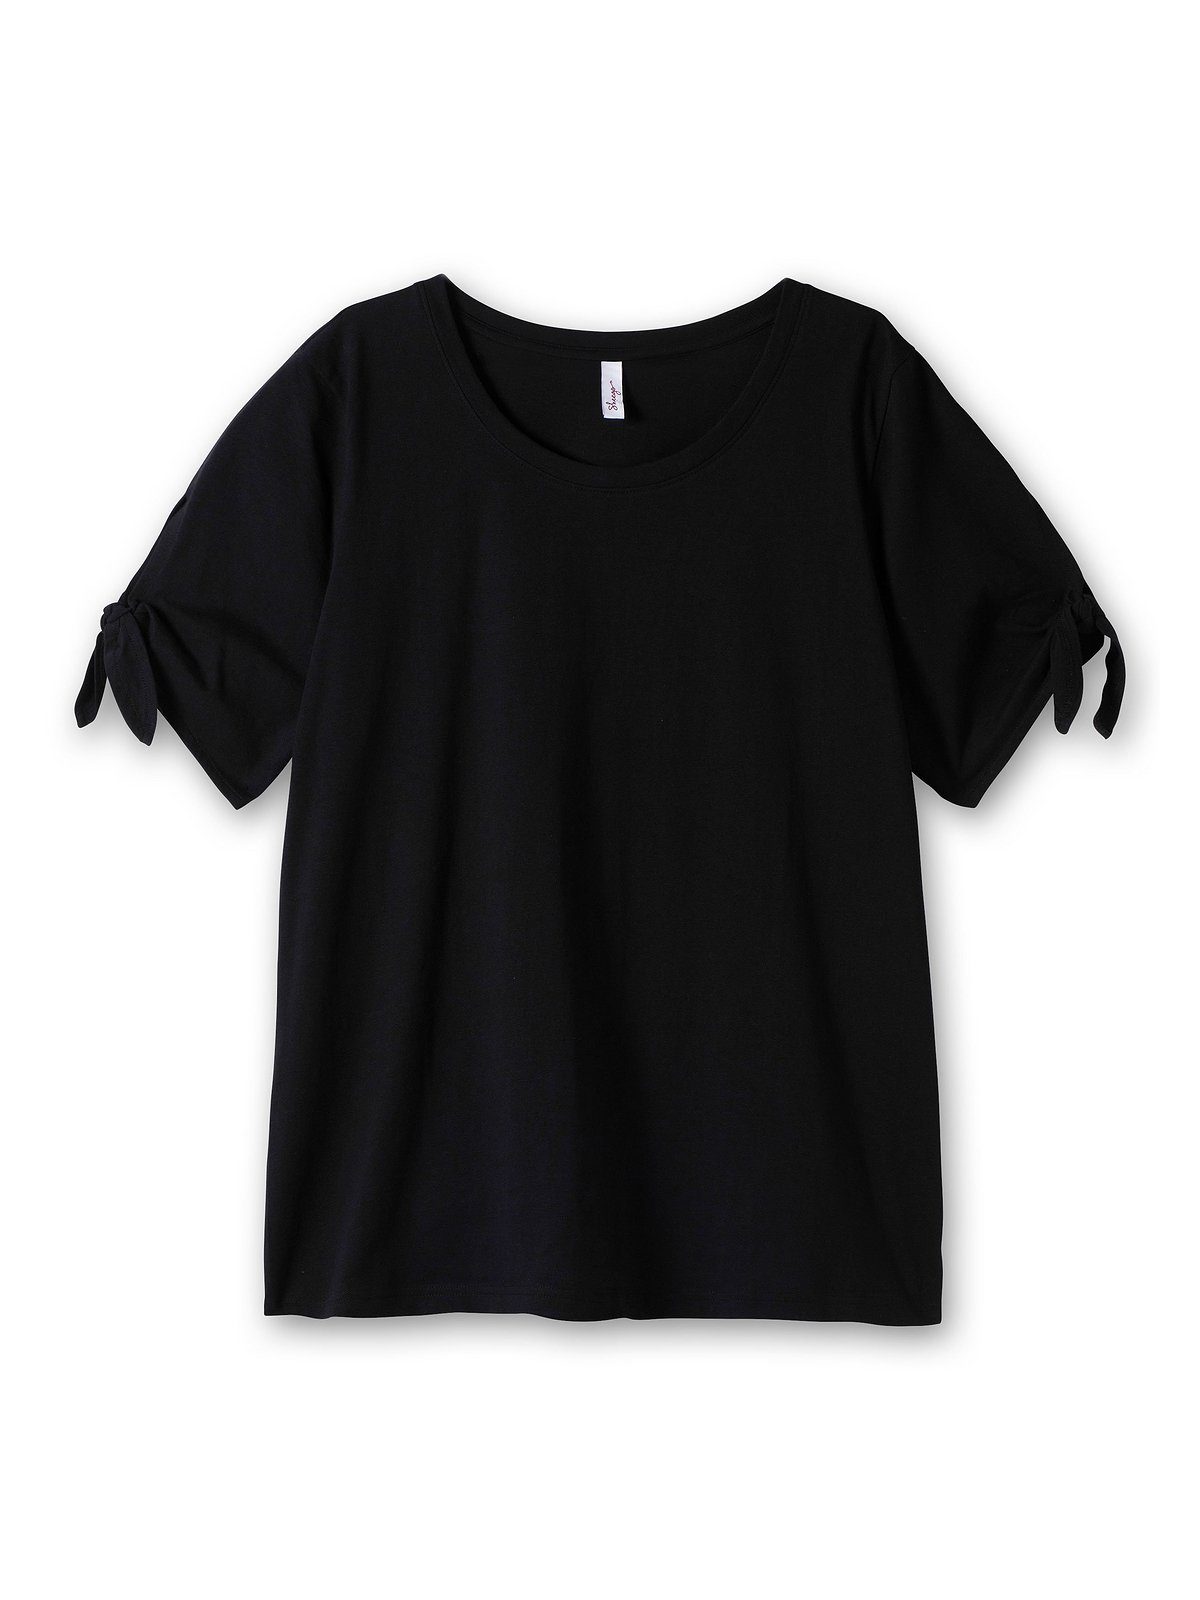 T-Shirt schwarz Knotendetail Ärmelsaum mit Größen am Sheego Große